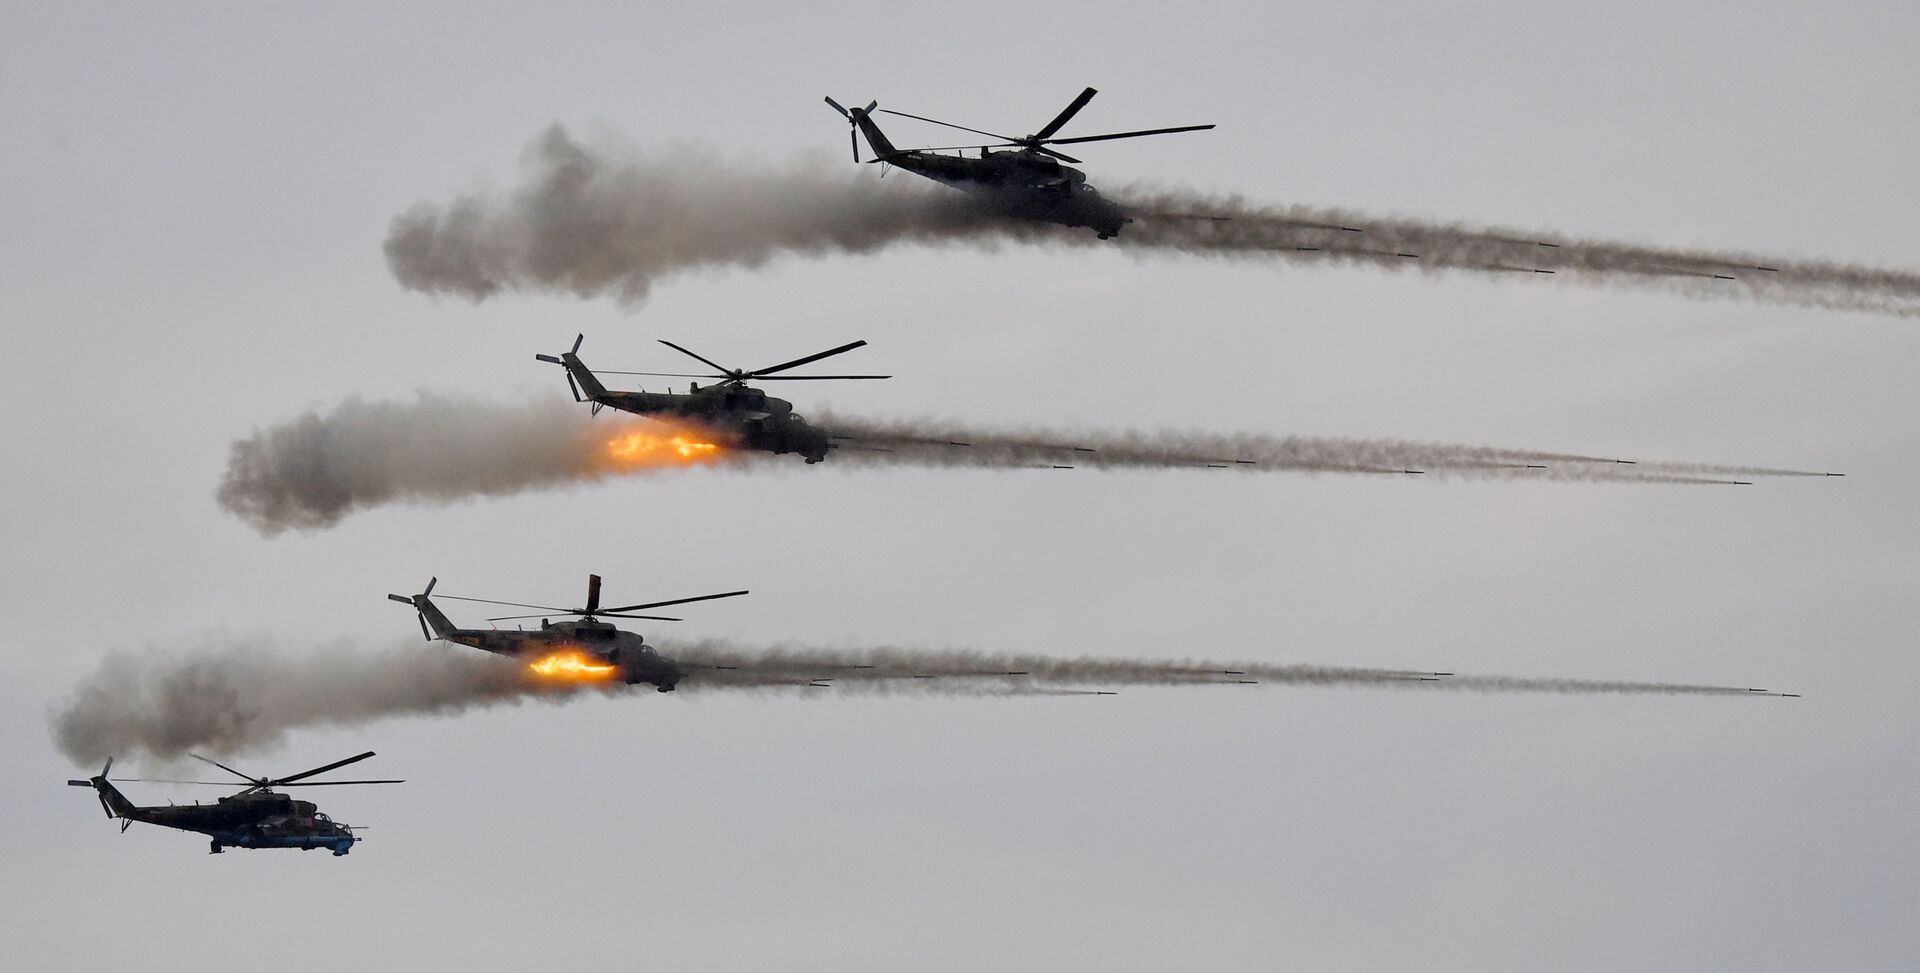 Helicópteros de ataque Mi-24 durante a etapa principal dos exercícios militares Zapad 2021, no polígono de Mulino, região de Nizhny Novgorod, Rússia - Sputnik Brasil, 1920, 09.11.2021